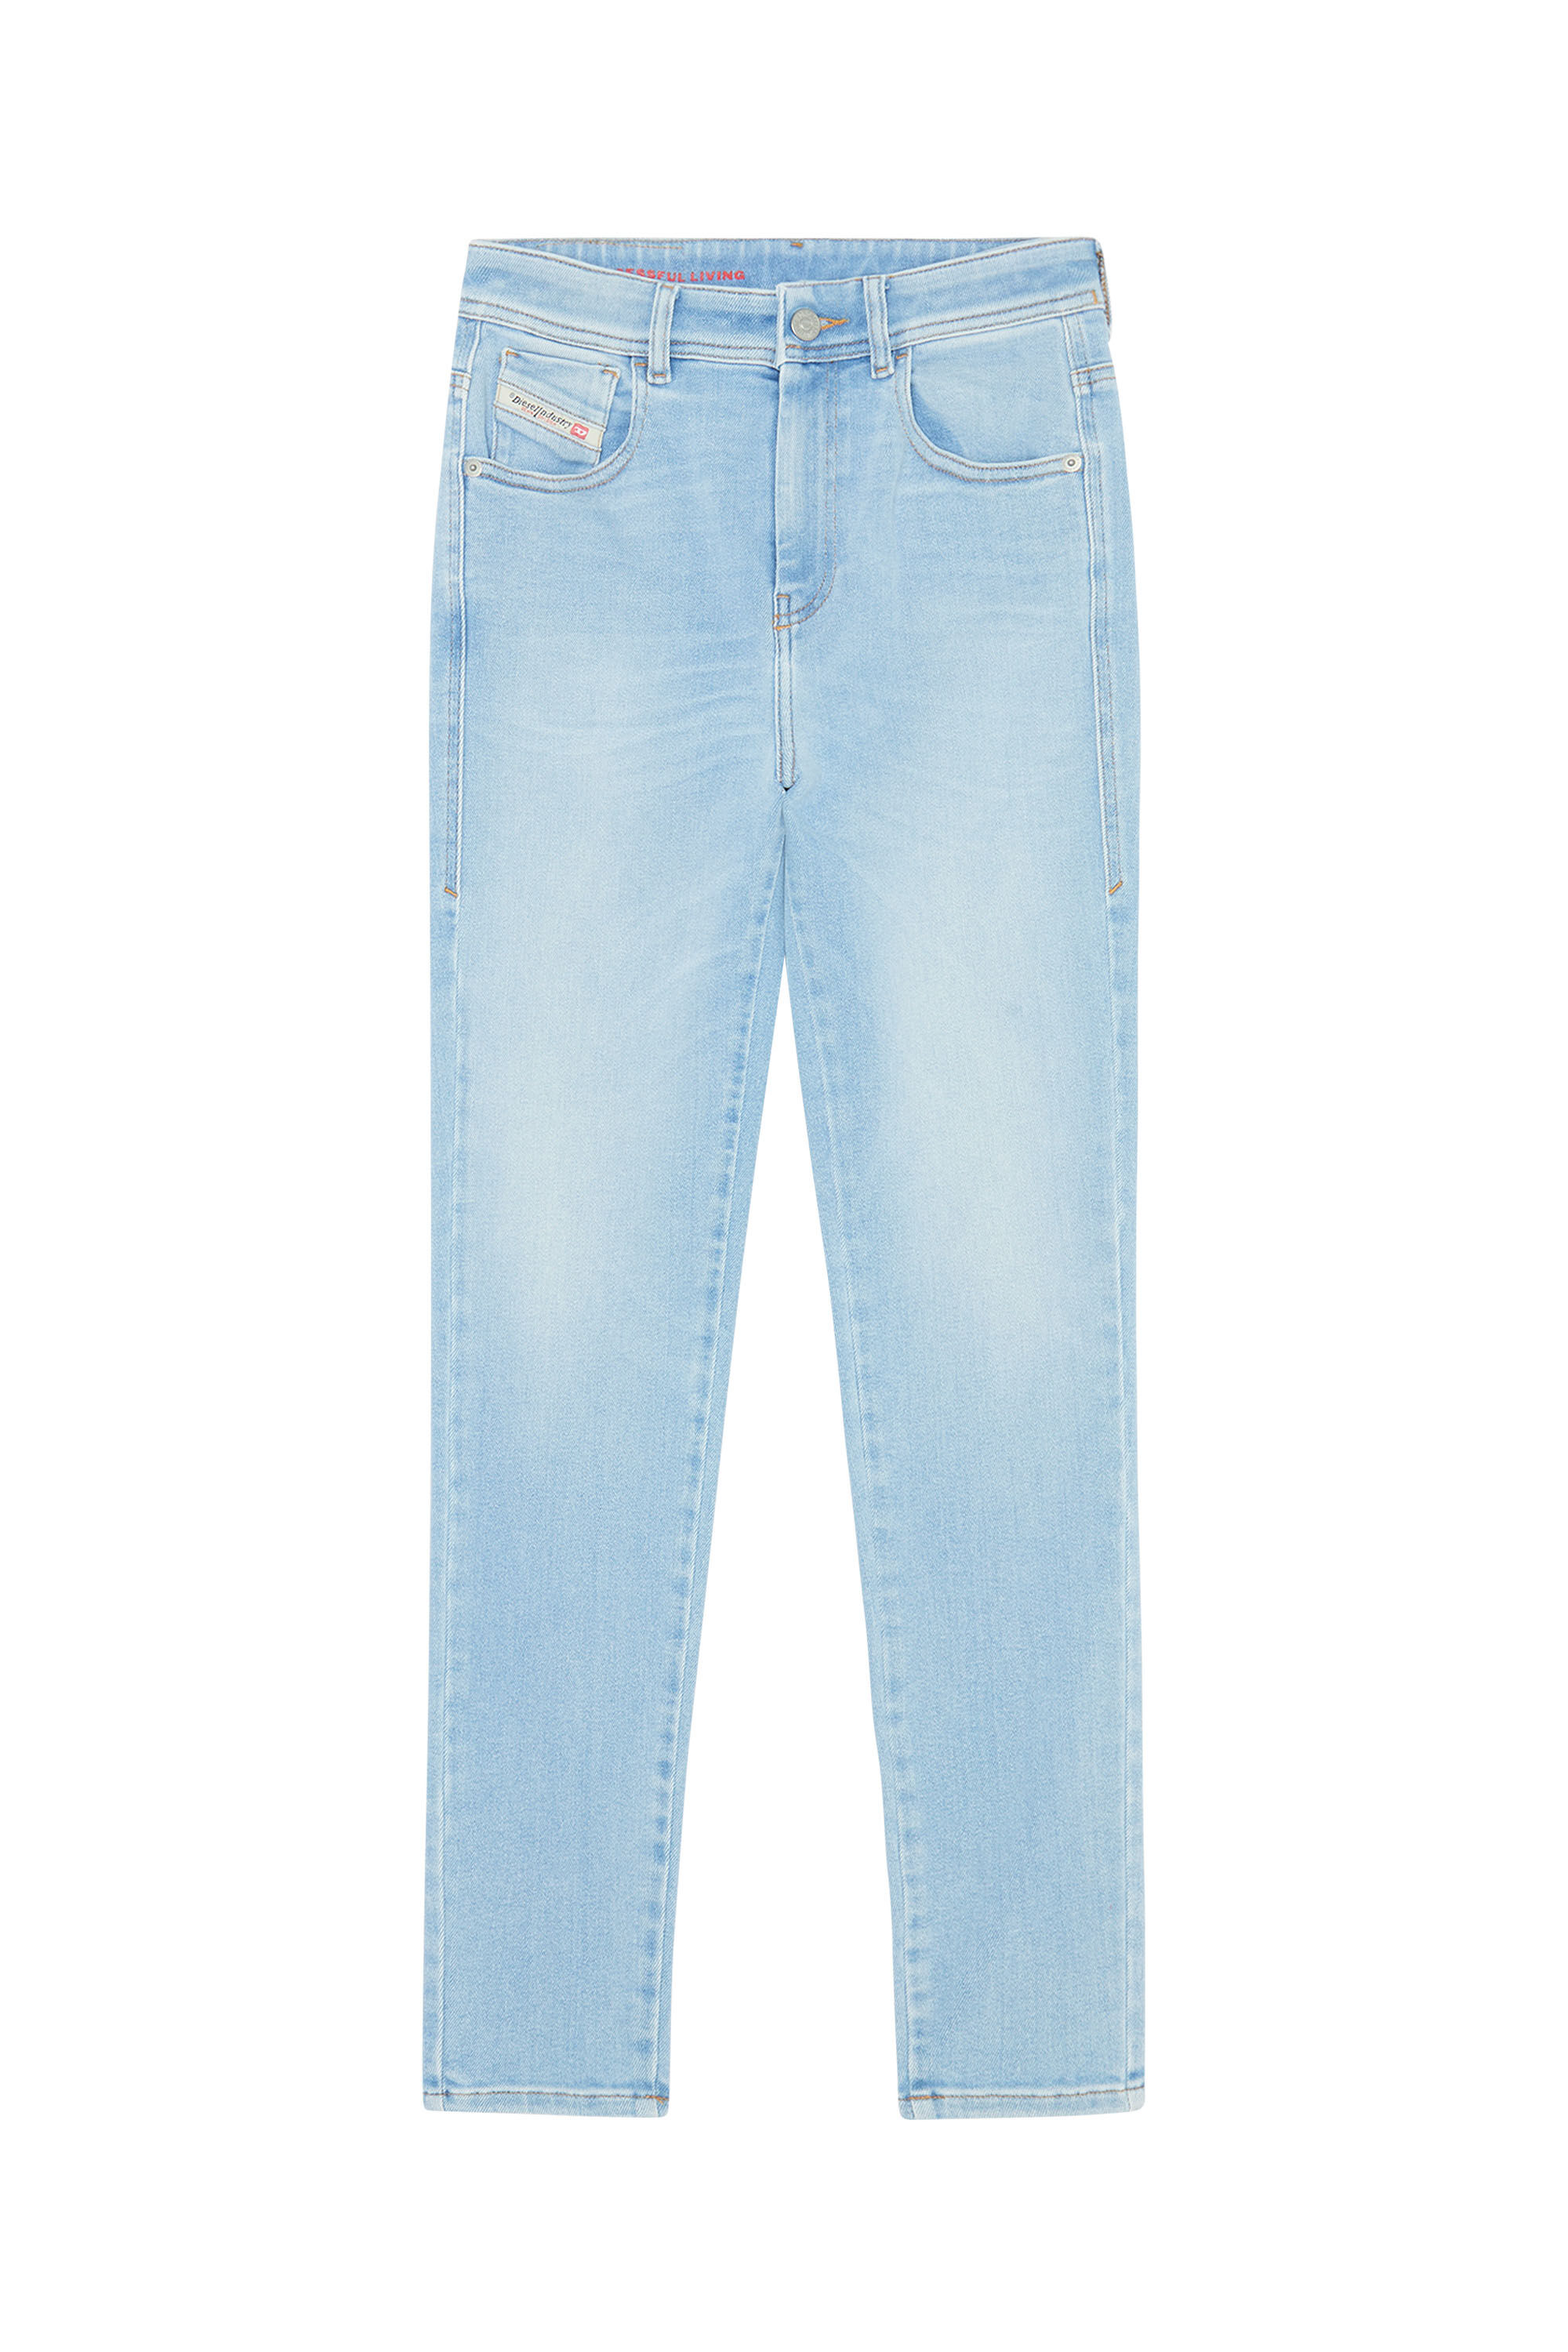 Diesel - Super skinny Jeans 1984 Slandy-High 09E76, Light Blue - Image 2